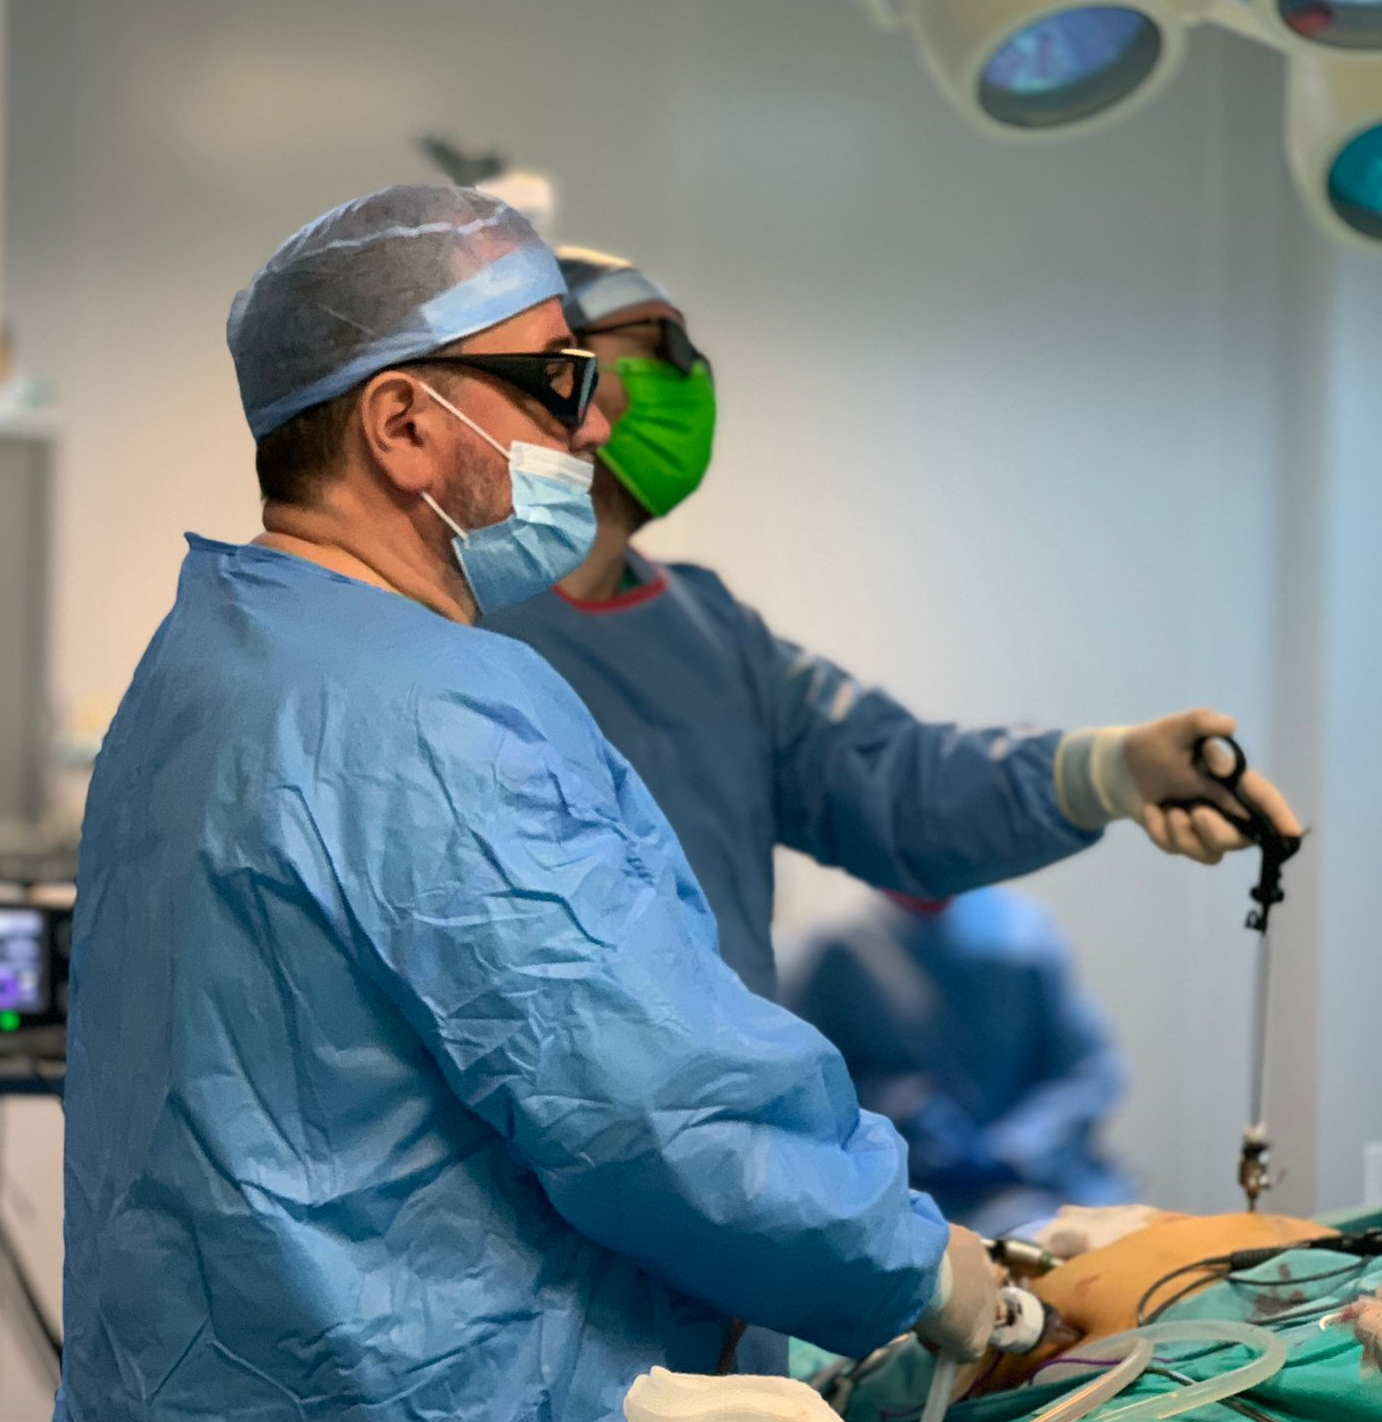 Peste 80% dintre operatiile efectuate in Spitalul Pelican sunt minim-invazive prin abord laparoscopic sau robotic, iar pentru tumorile foarte jos situate practicam anastomoze coloanale